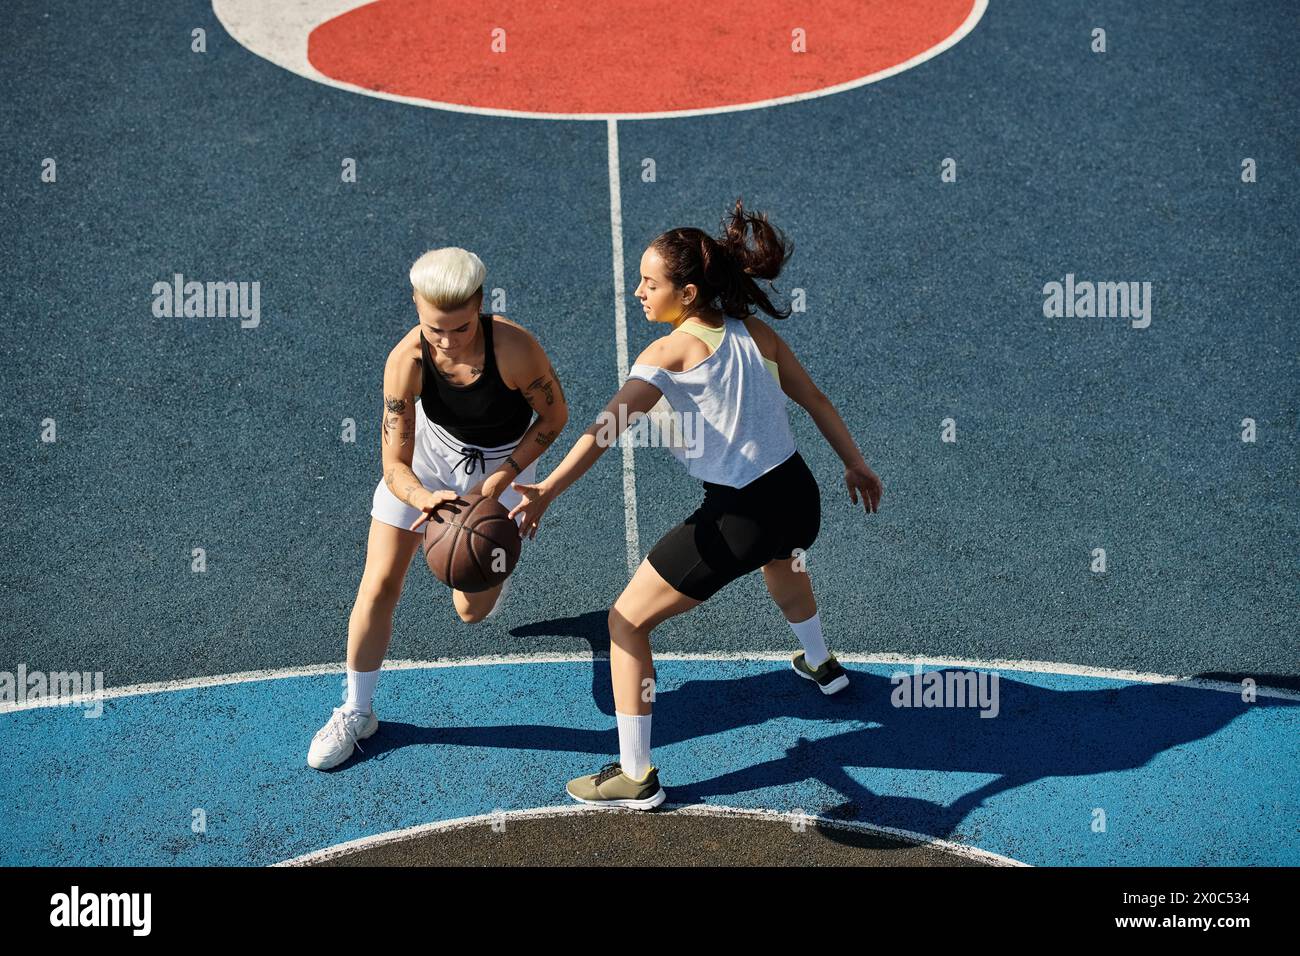 Deux femmes athlétiques se tiennent en toute confiance sur un terrain de basket-ball, prêtes à relever tous les défis qui se présentent à elles. Banque D'Images